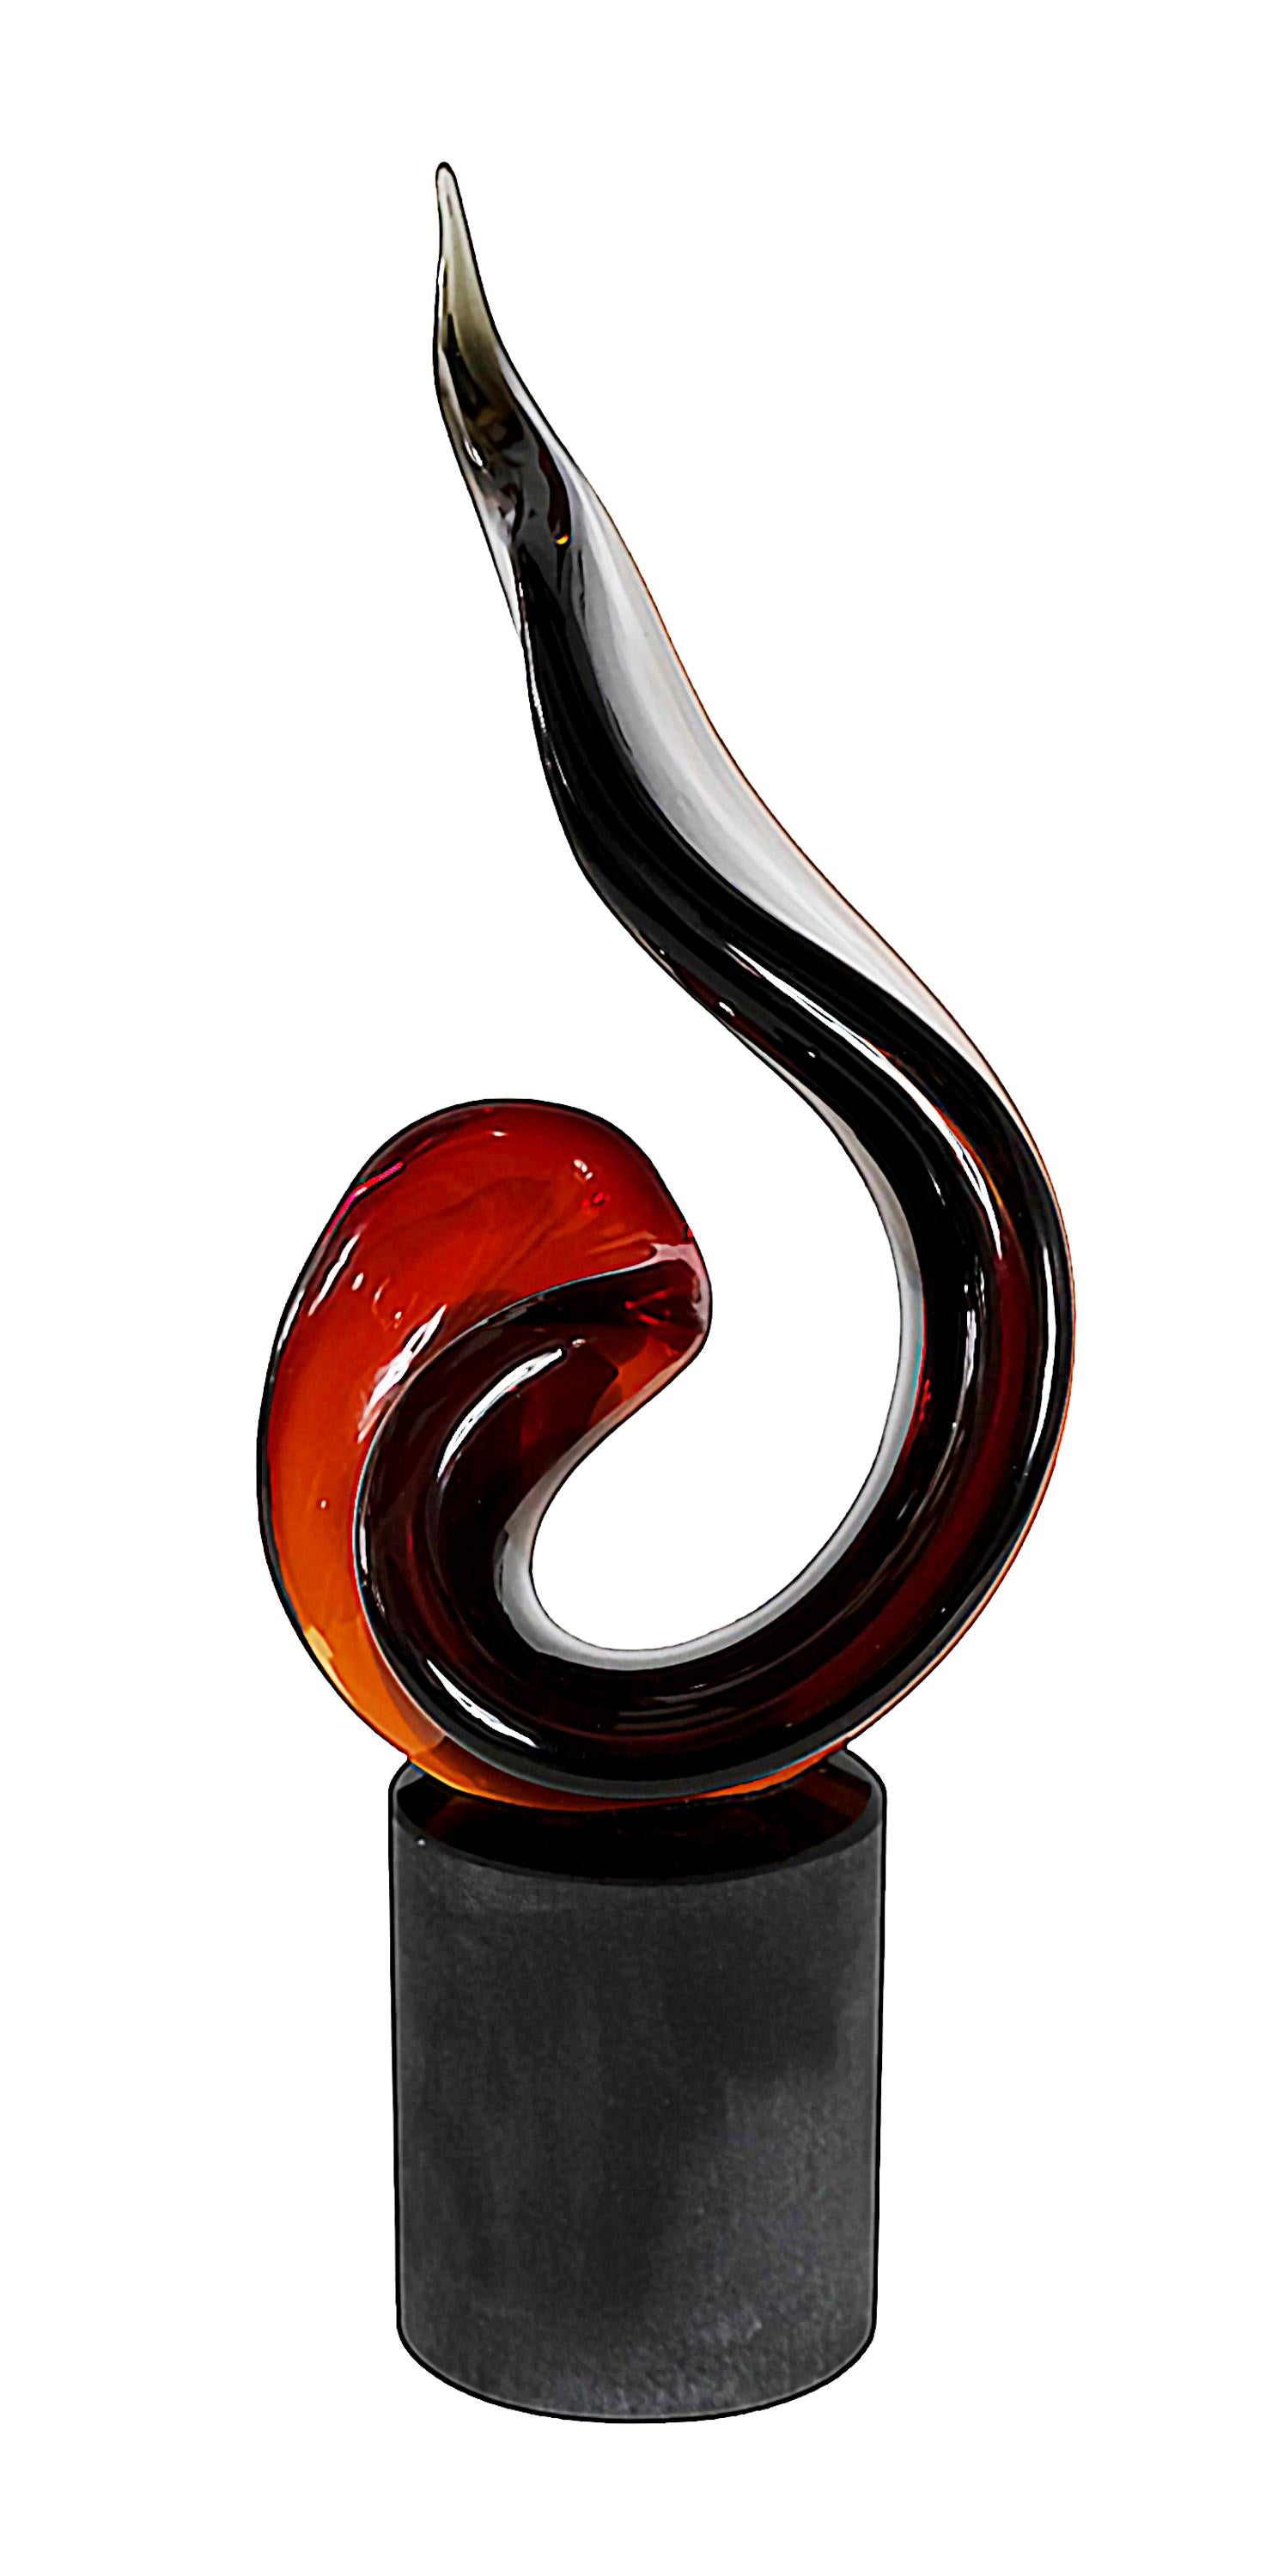 Italienische handgefertigte Skulptur aus Murano-Glas mit abstraktem Design.
Erstellt und unterzeichnet von Romano Dona.
Der Sockel ist rund und besteht aus schwarzem, massivem, schwerem Glas, das mattiert ist. 
Das Skulpturenelement ist im Übergang